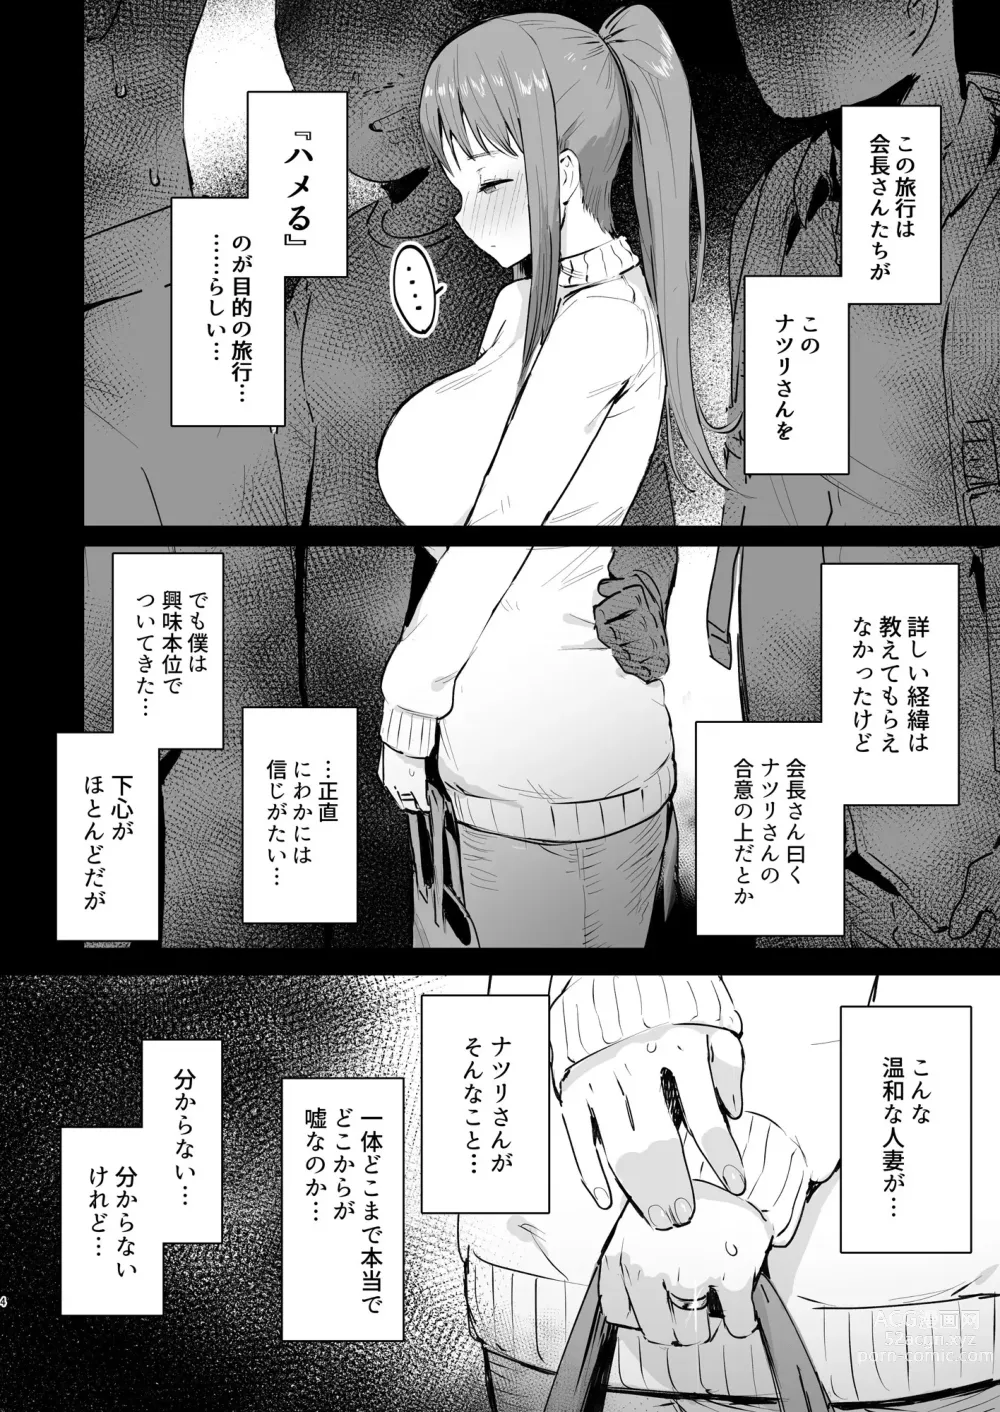 Page 3 of doujinshi Naraku no Soko made